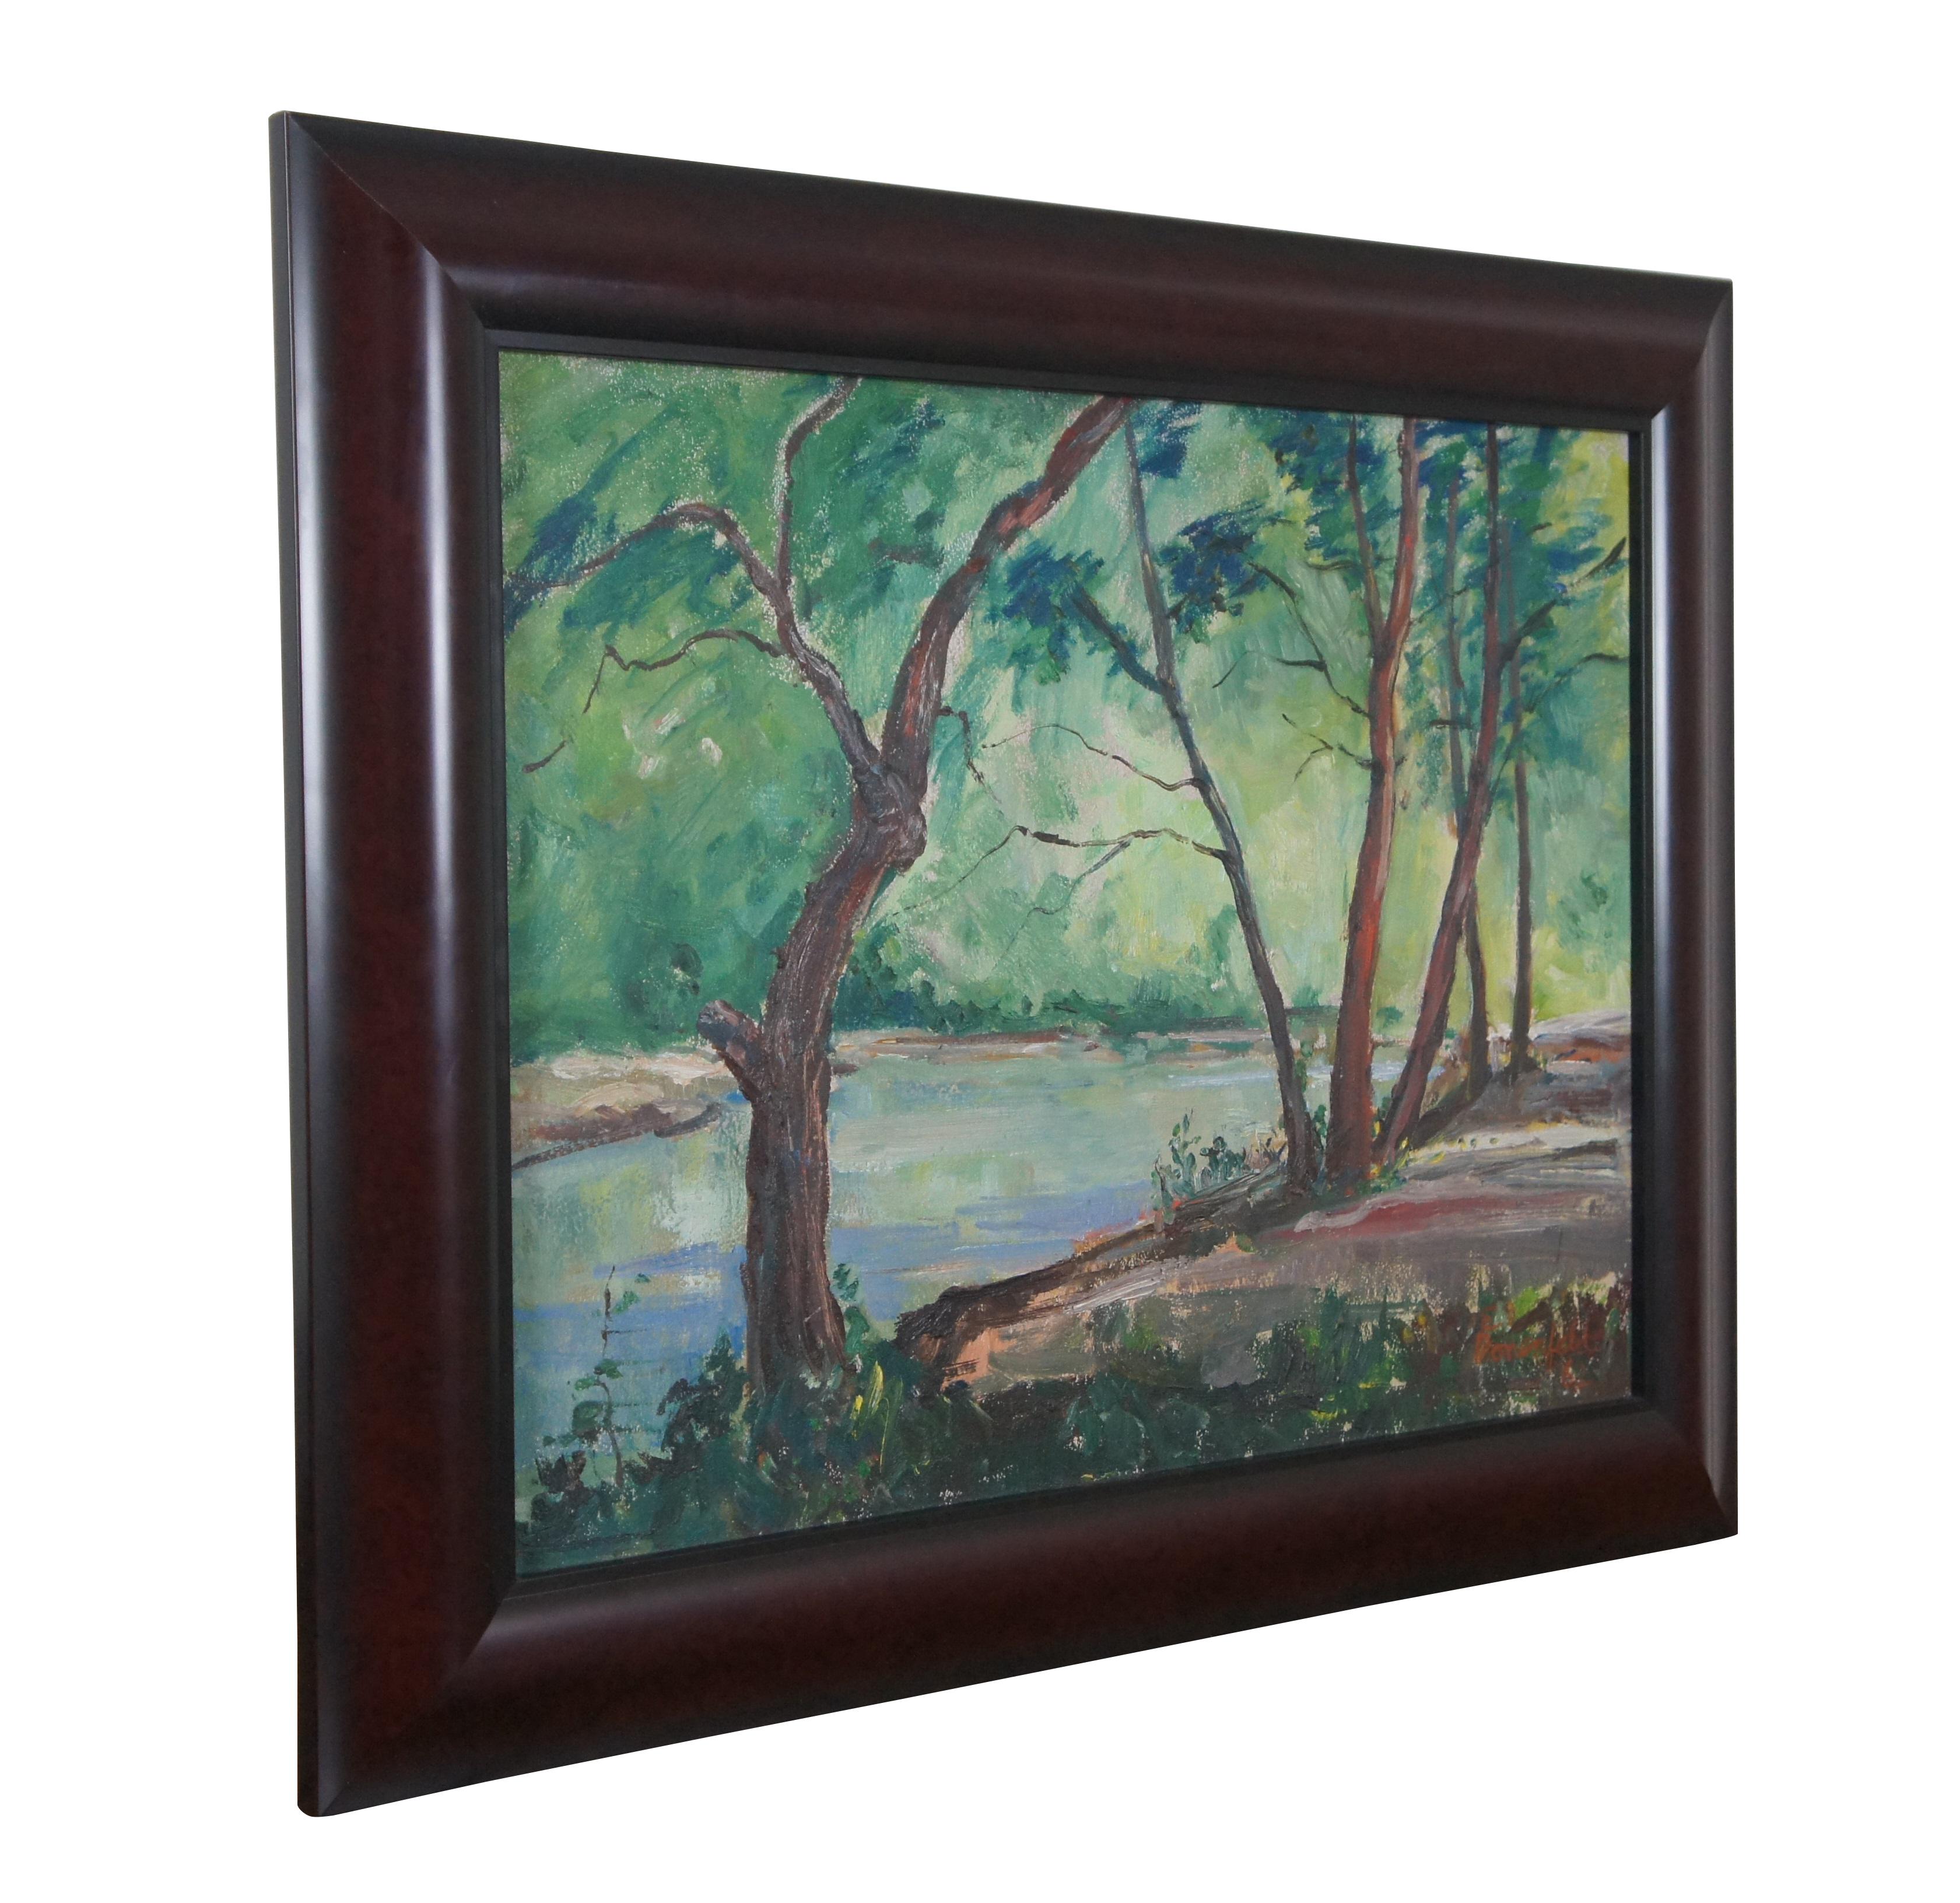 Ein schönes impressionistisches Landschaftsgemälde von Elaine Donenfeld aus dem Jahr 1962.  Das Ölgemälde ist auf Karton gemalt und zeigt eine Waldlandschaft am Fluss.  Signiert unten rechts.  Gerahmt in Holz mit rotem Mahagoni-Finish.

Elaine